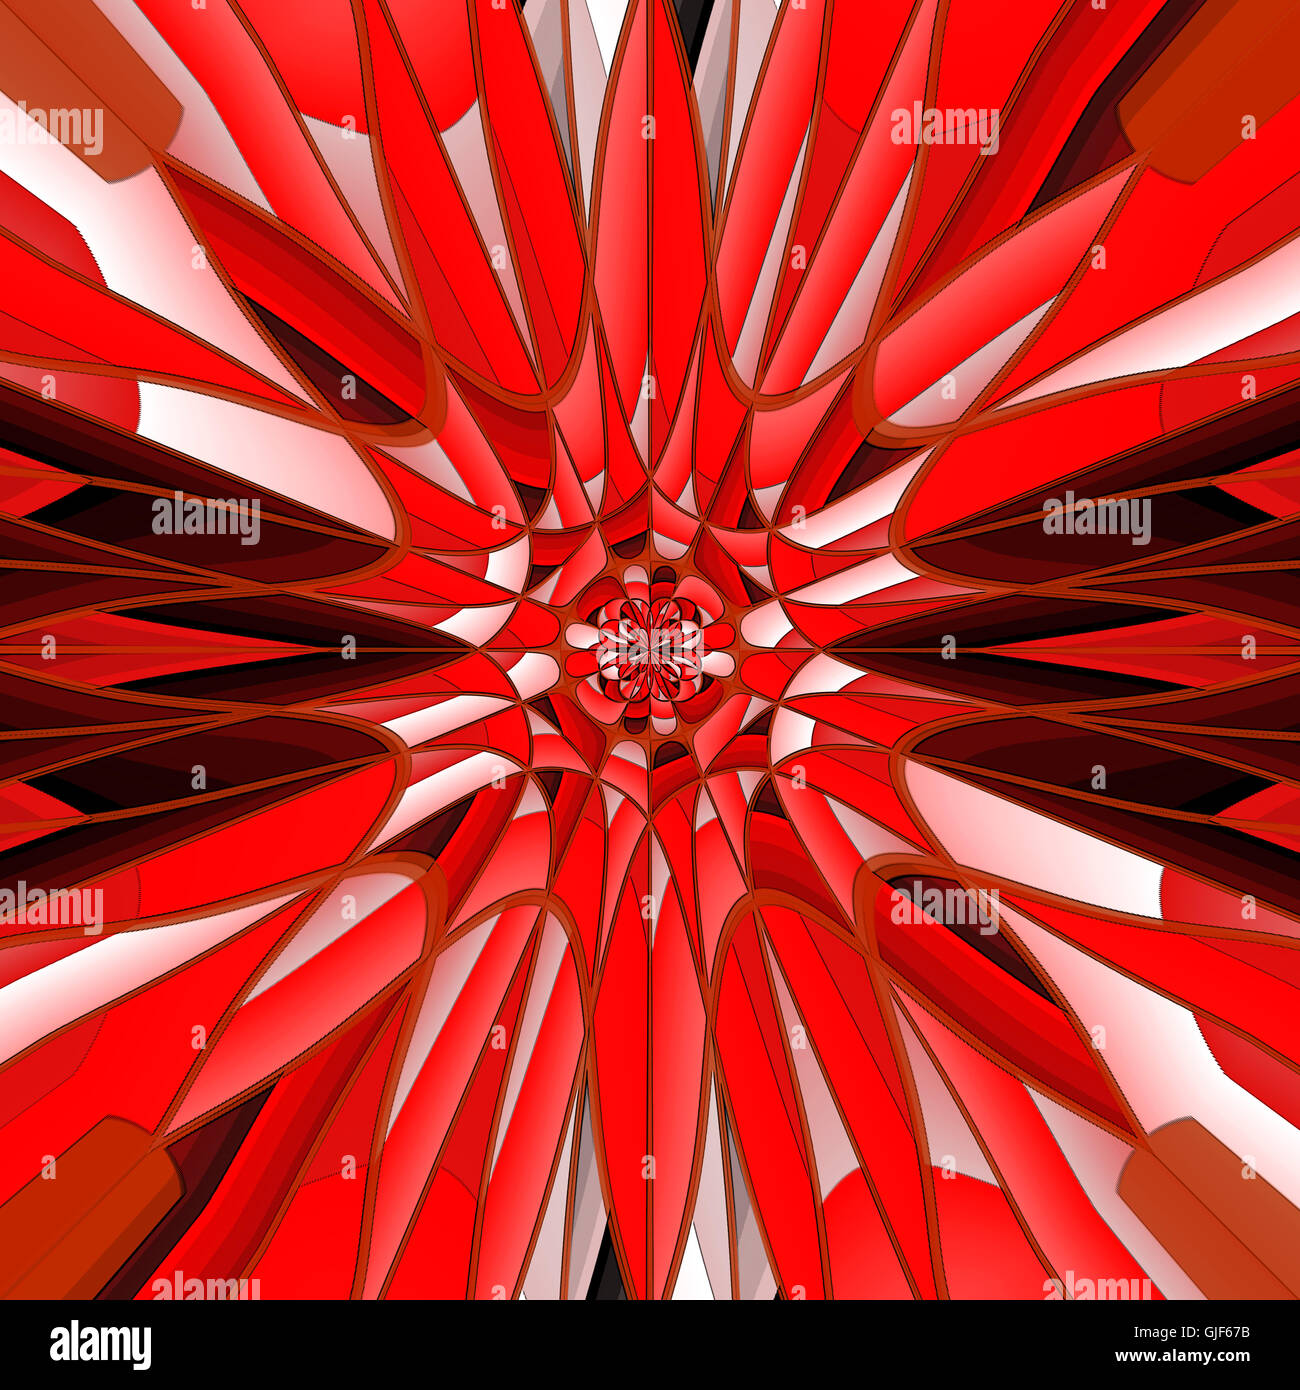 Abstract digital art dans des tons rouges, ressemblant à une pierre minérale avec des bords nets et facettes. Banque D'Images